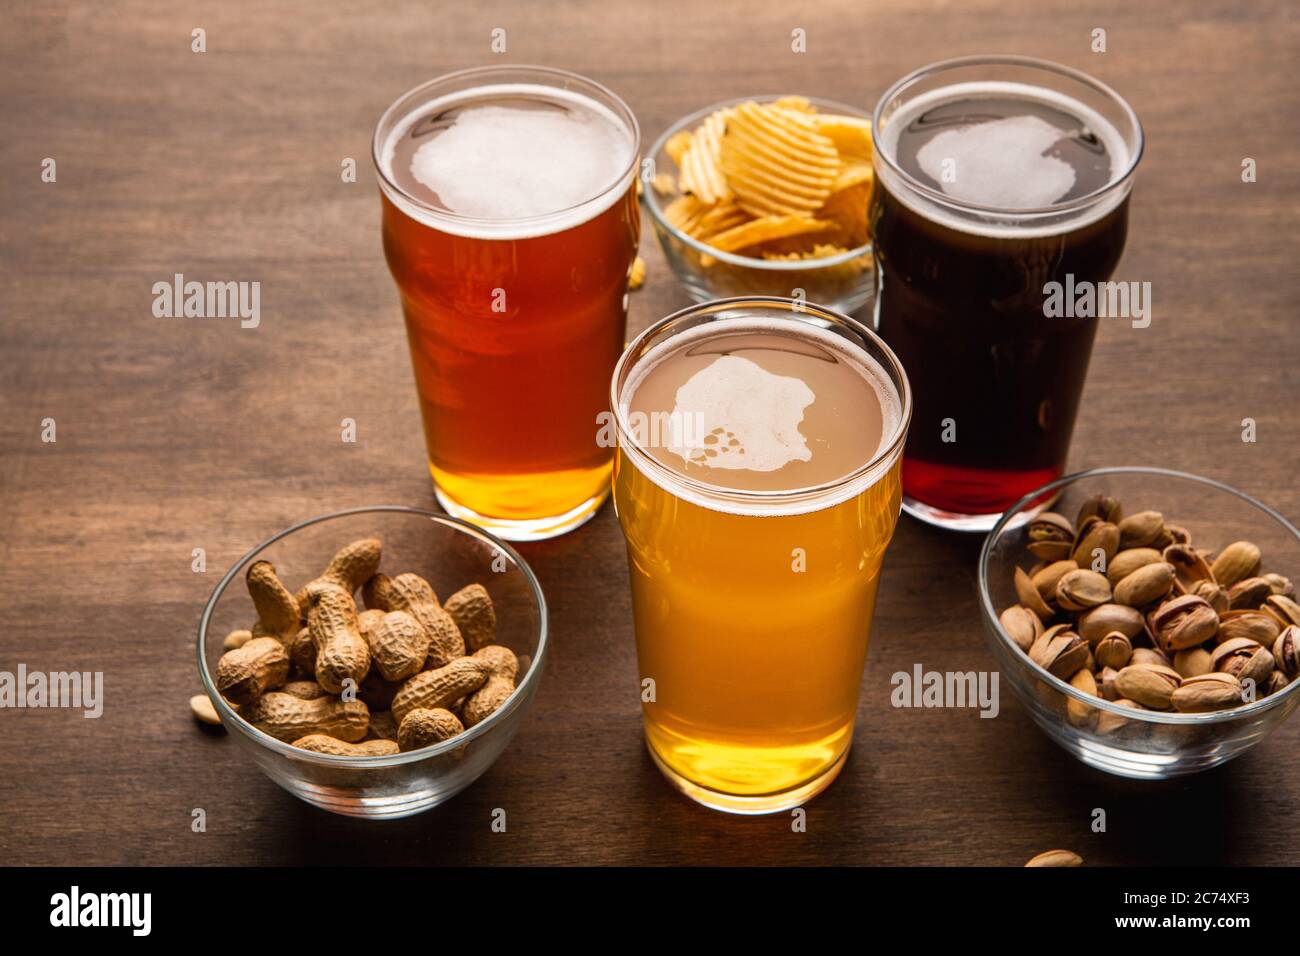 Ambra scuro e birra non filtrata in bicchieri. Pistacchi, noci e patatine in piatti sul tavolo Foto Stock